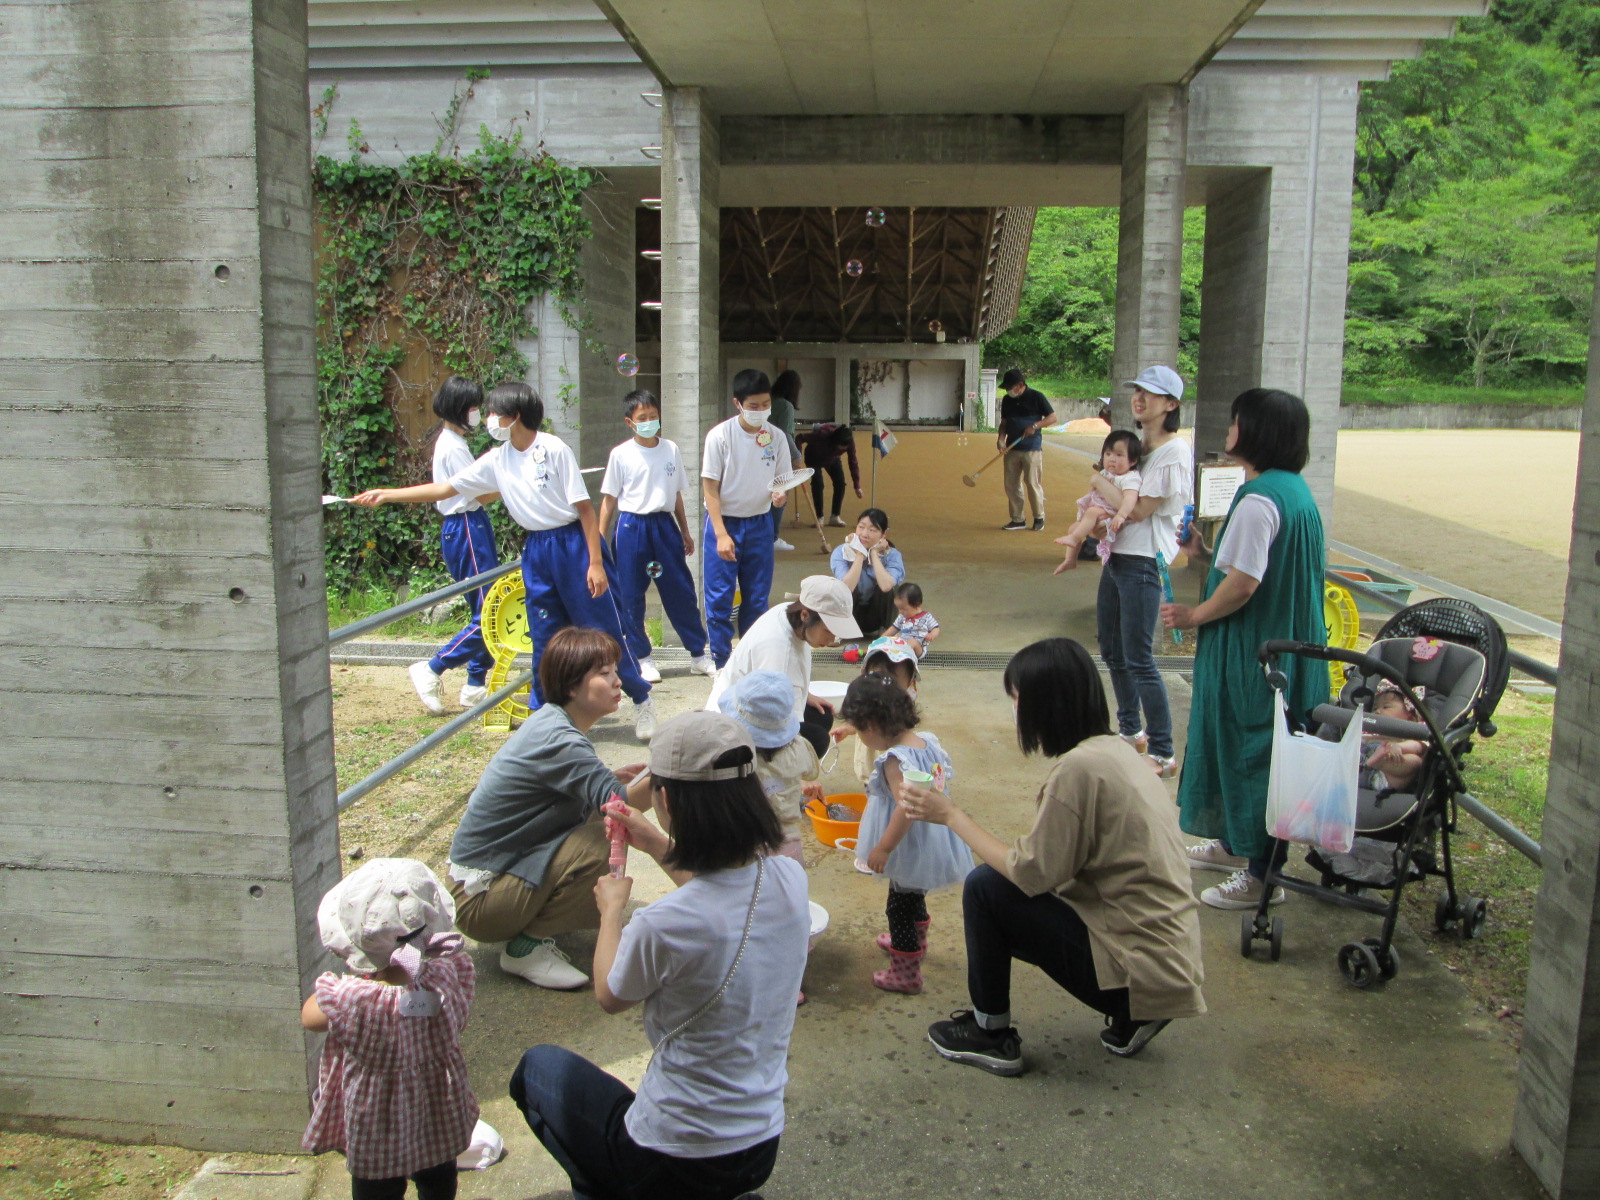 複数の親子が学遊館の屋外でしゃぼん玉遊びをしている写真